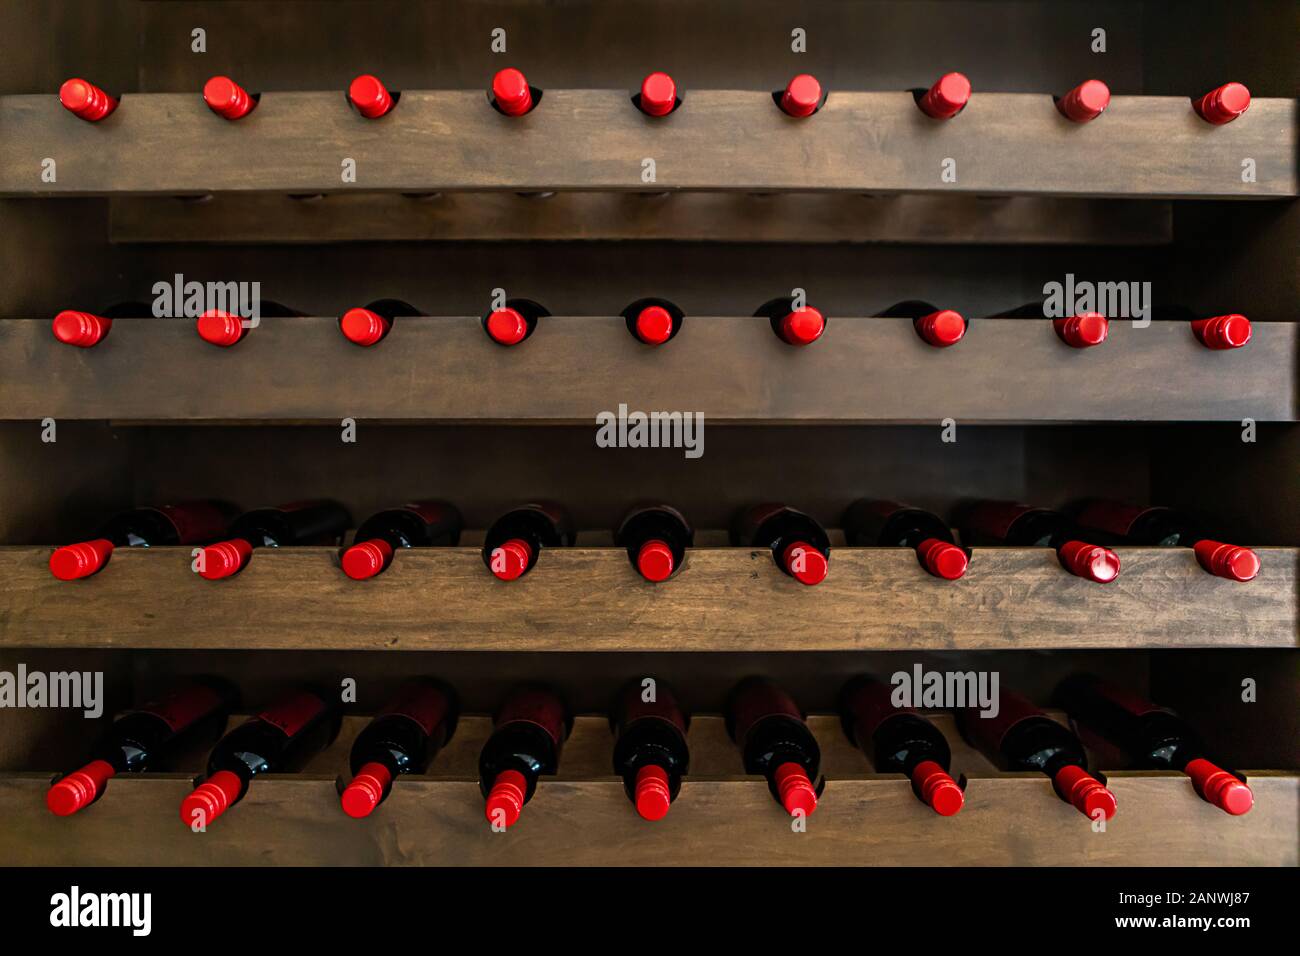 Linien der Weinflaschen mit einem roten Siegel, gespeichert auf einem  hölzernen Gestell, Weinproben Weine, Weinproben Weine und Shop Weingut  Hintergrund Konzept Stockfotografie - Alamy